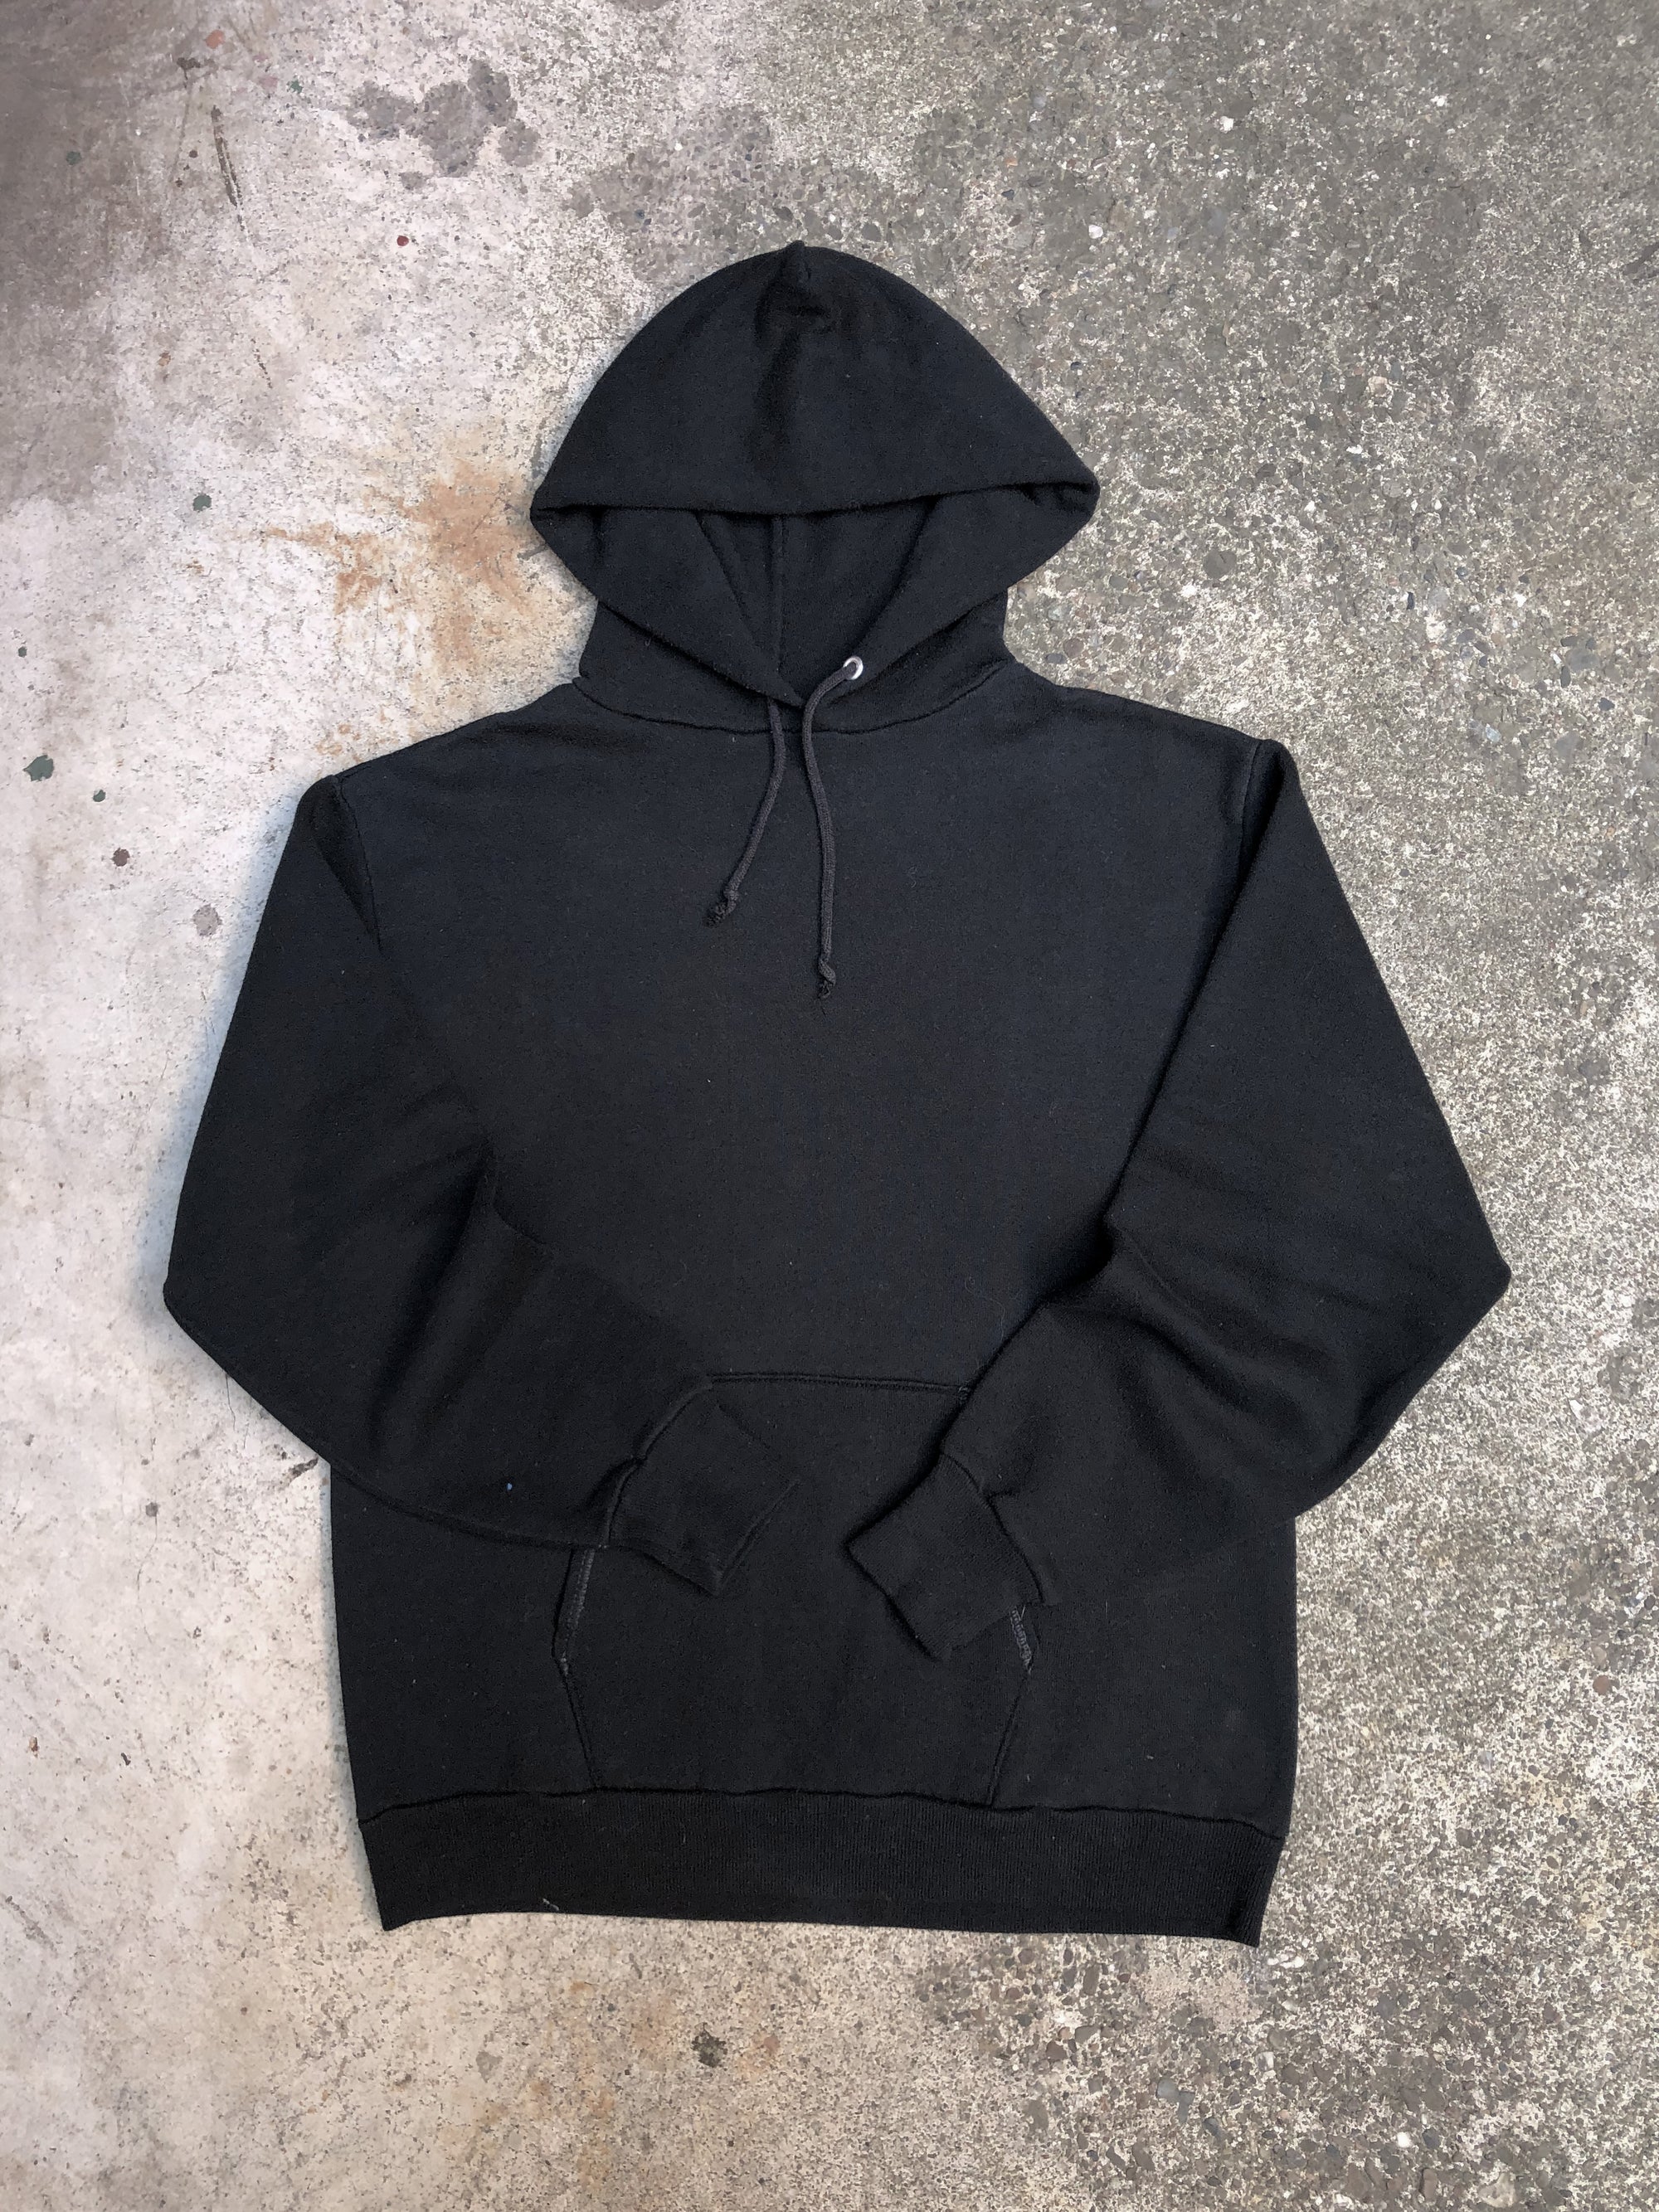 1980s Black Blank Hoodie Sweatshirt (S)